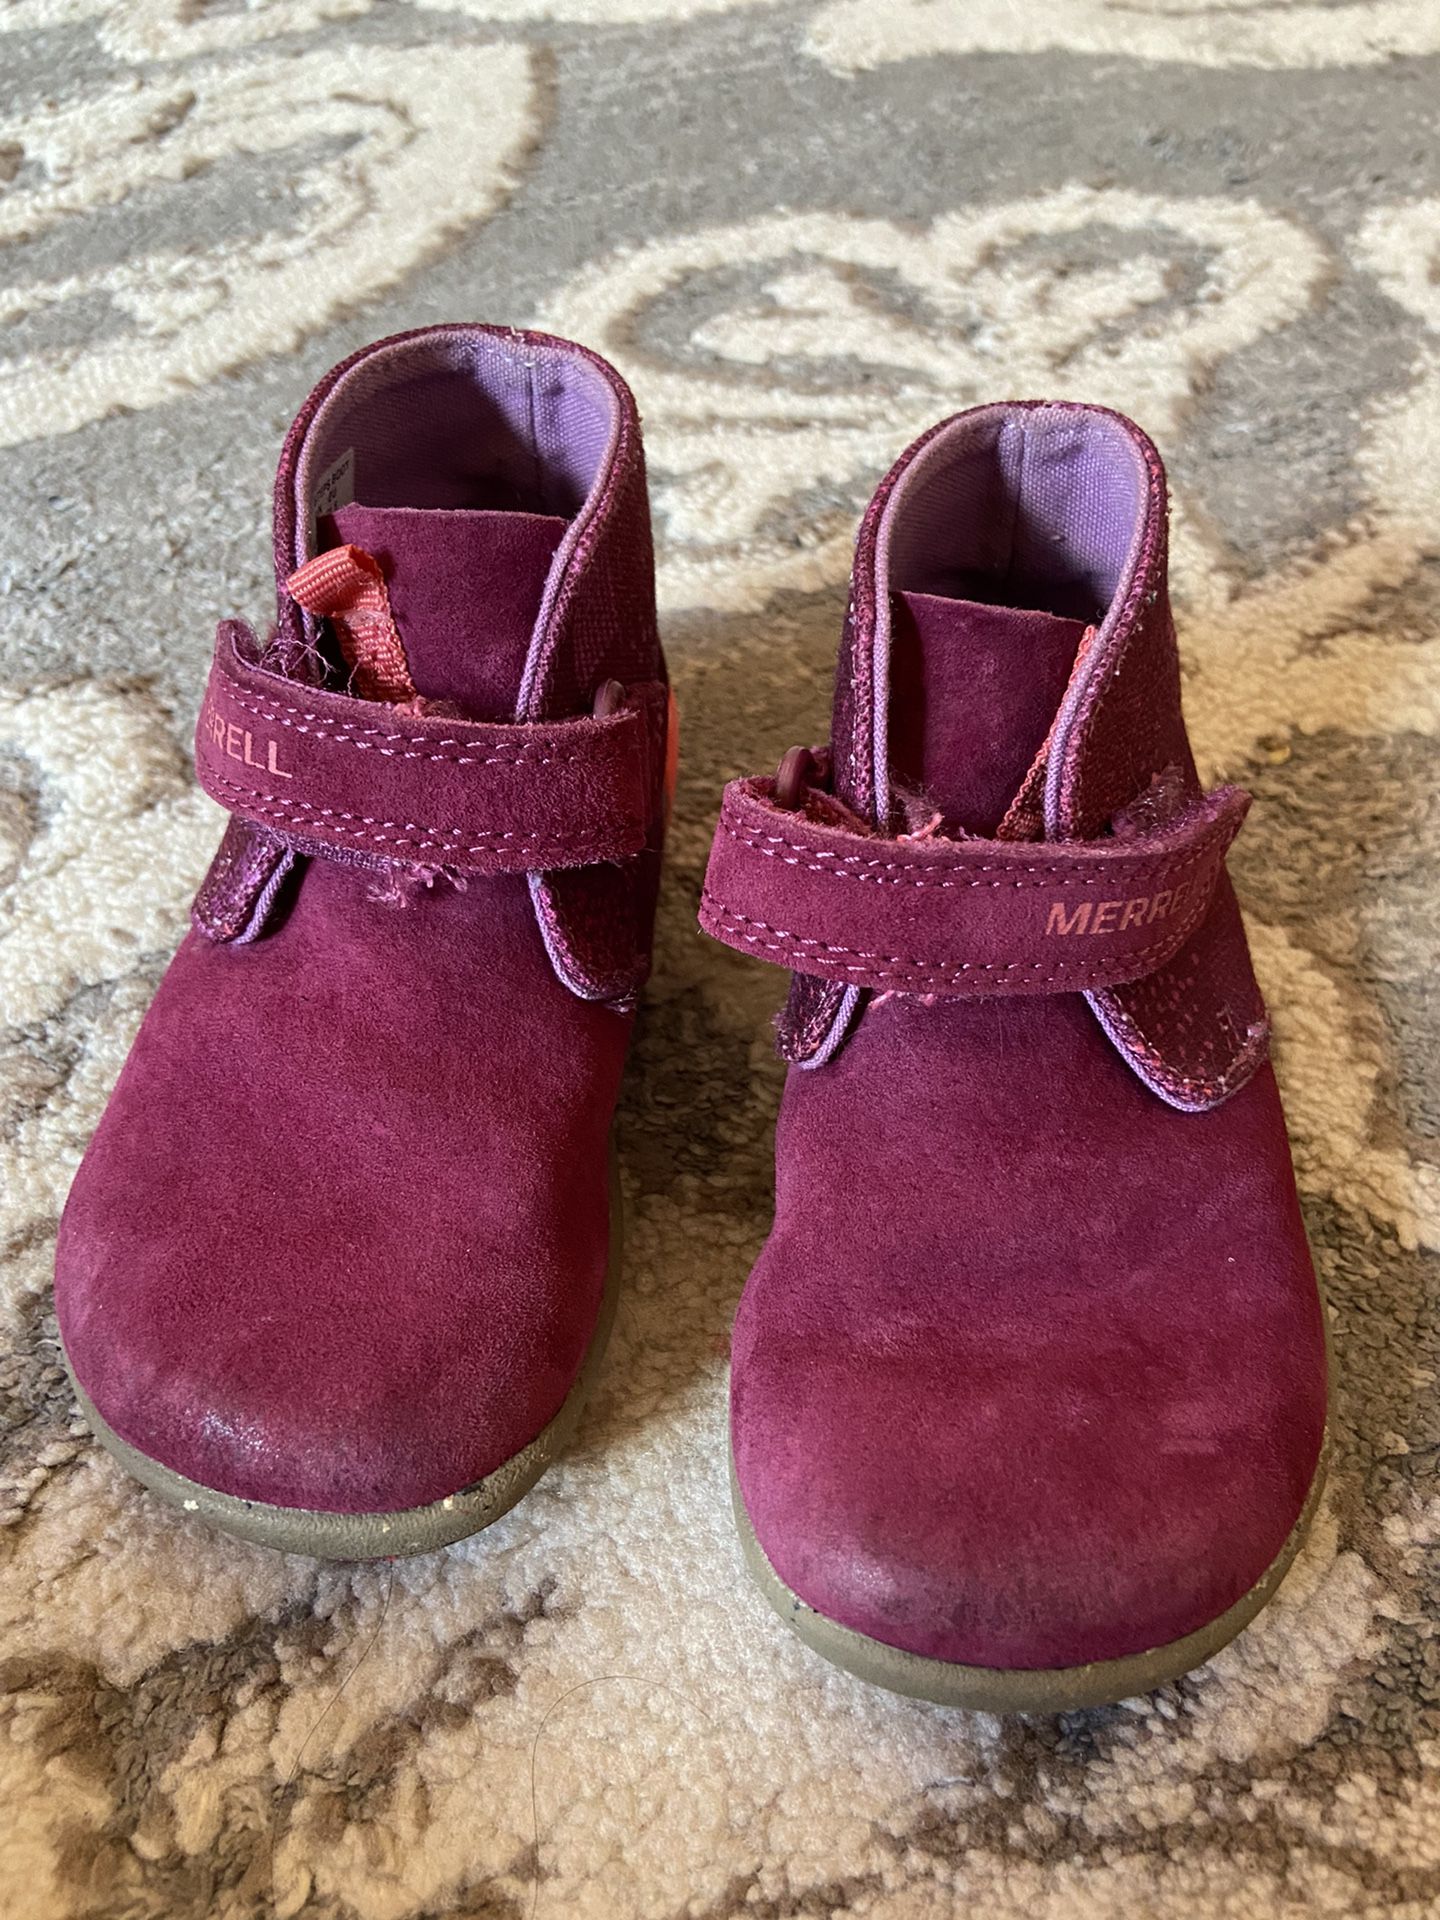 Merrell Boots Toddler 5.5